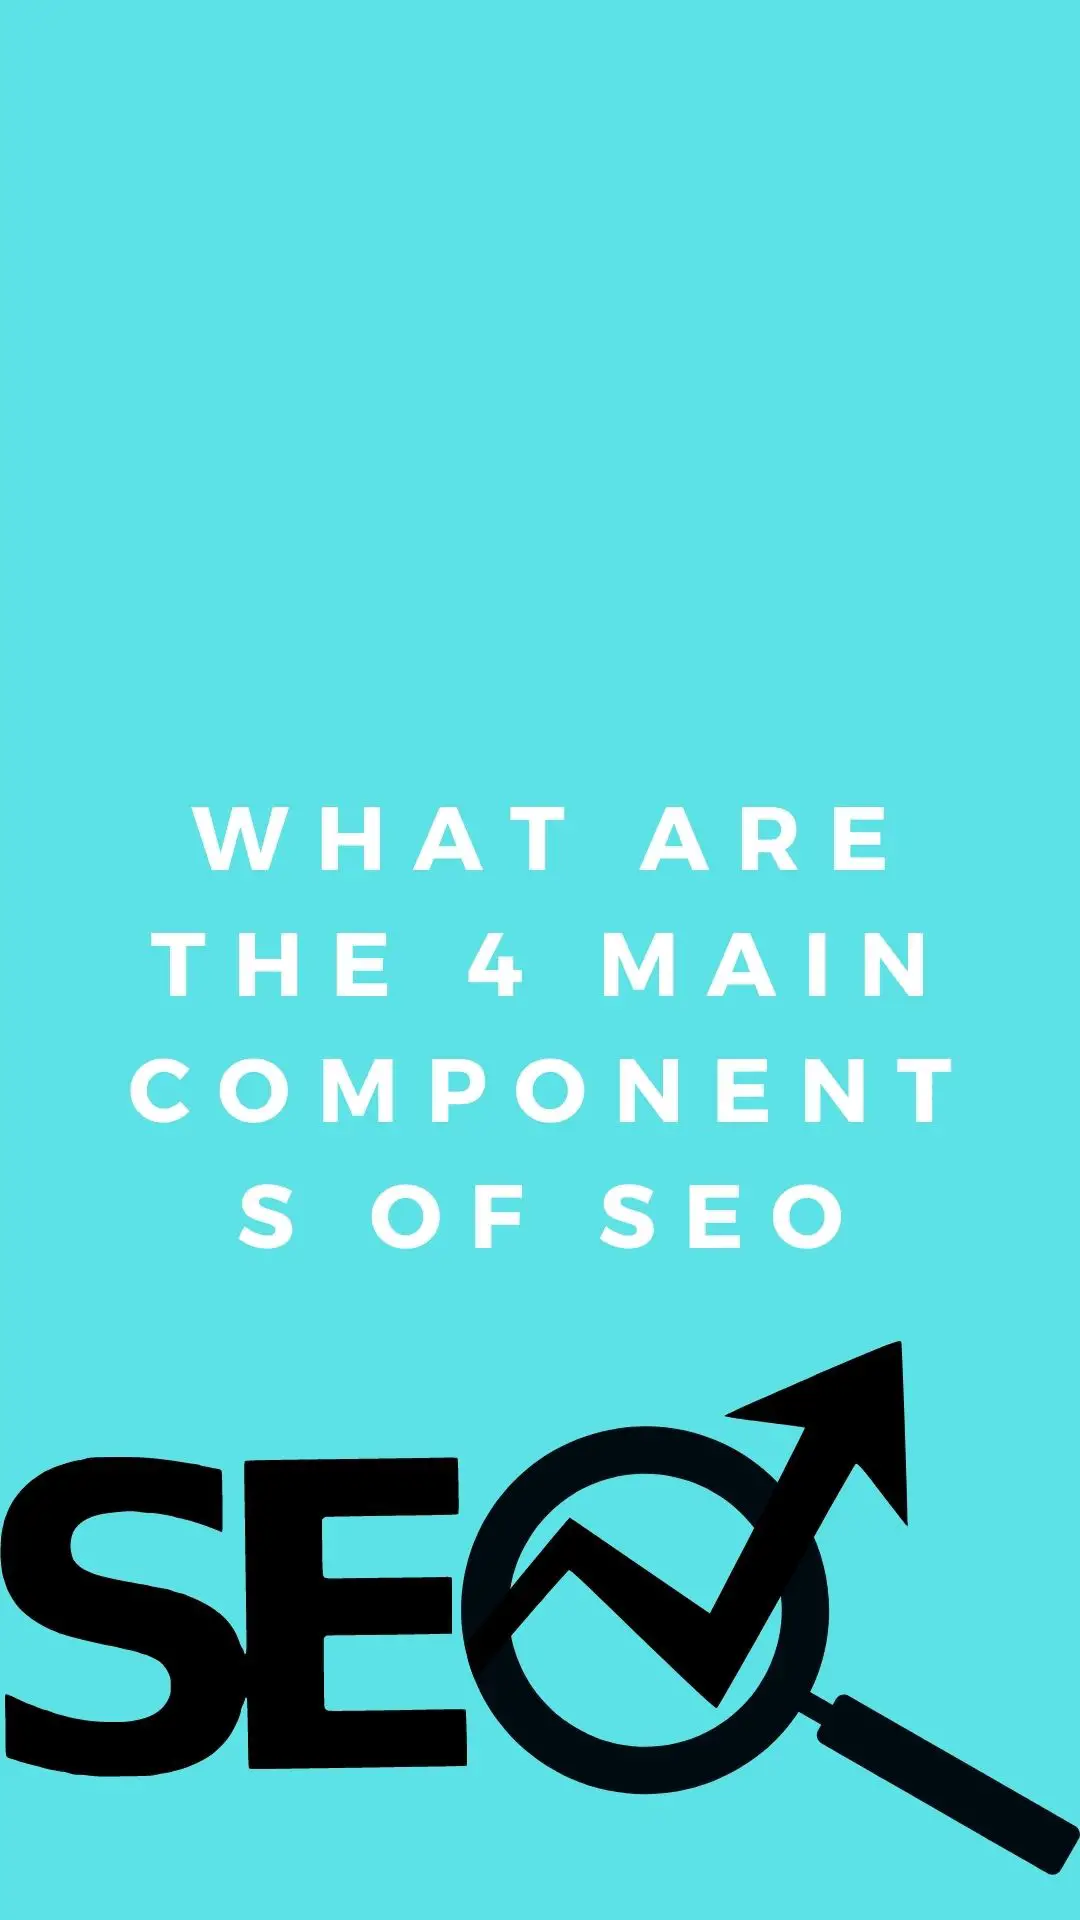 Quels sont les 4 composants principaux du SEO? : SEO technique, SEO on-page, SEO off-page, Contenu